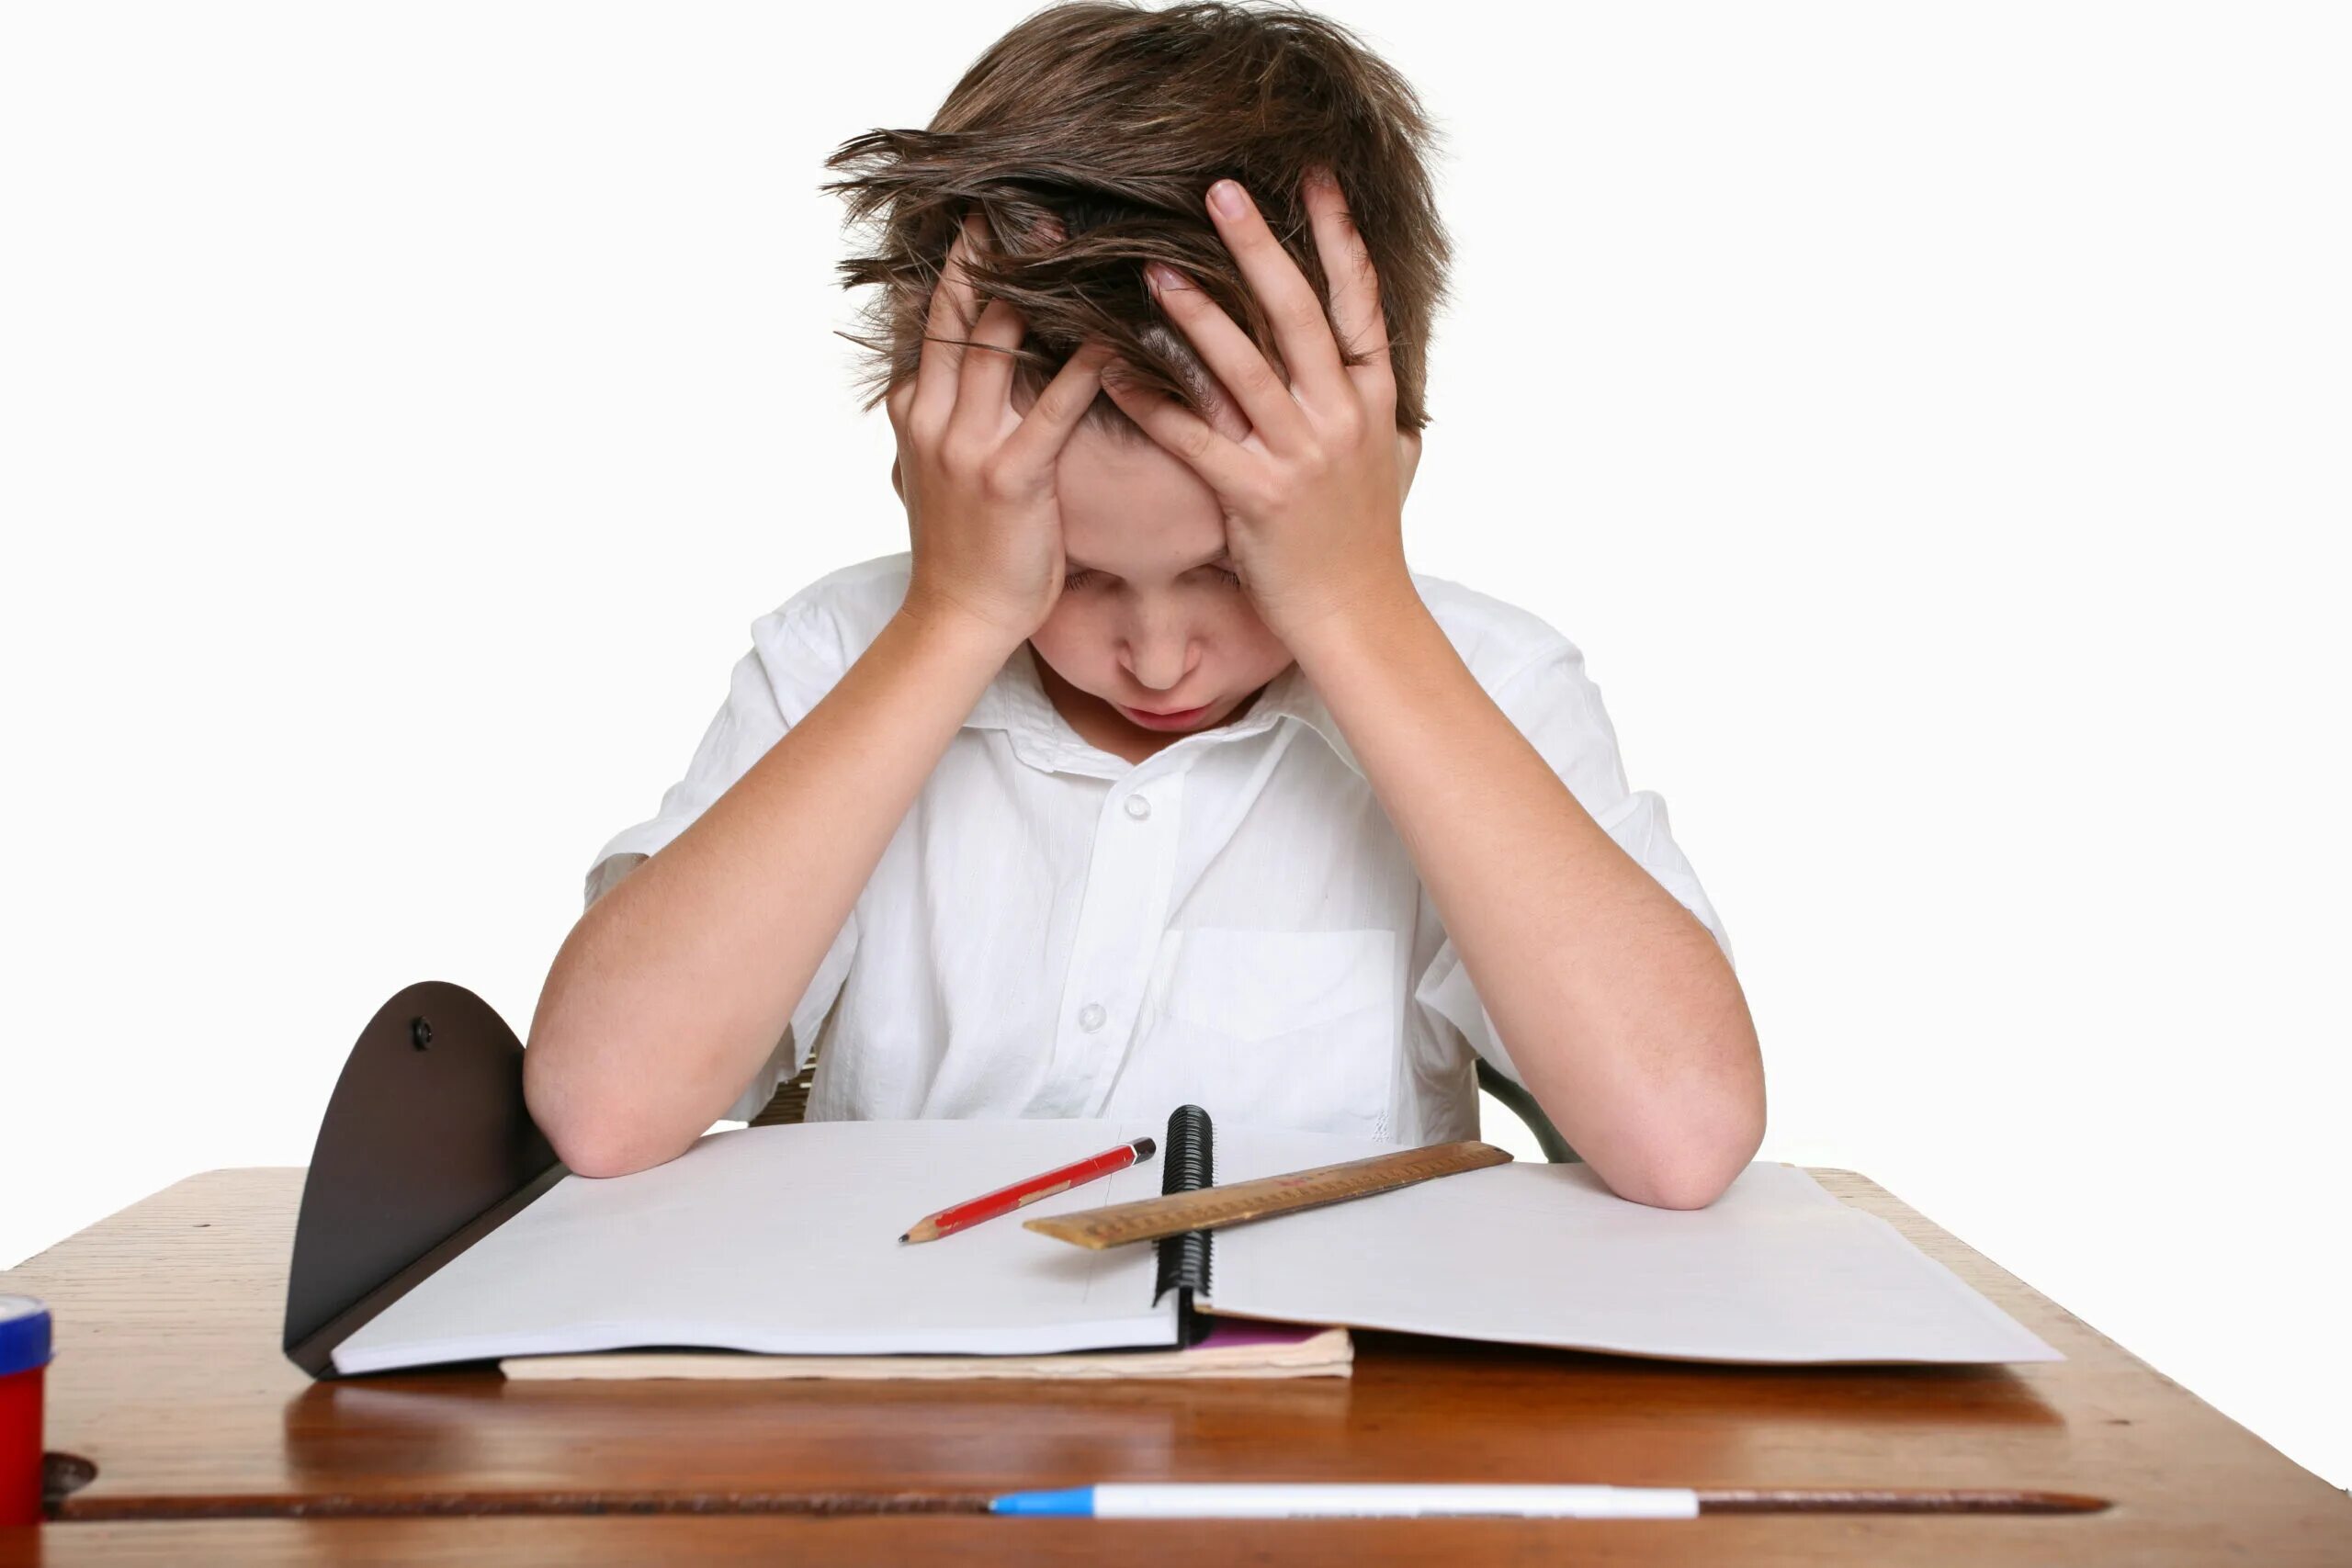 Class homework. "Дети и стресс". Стресс учеников. Трудности в учебе. Усталый ученик.